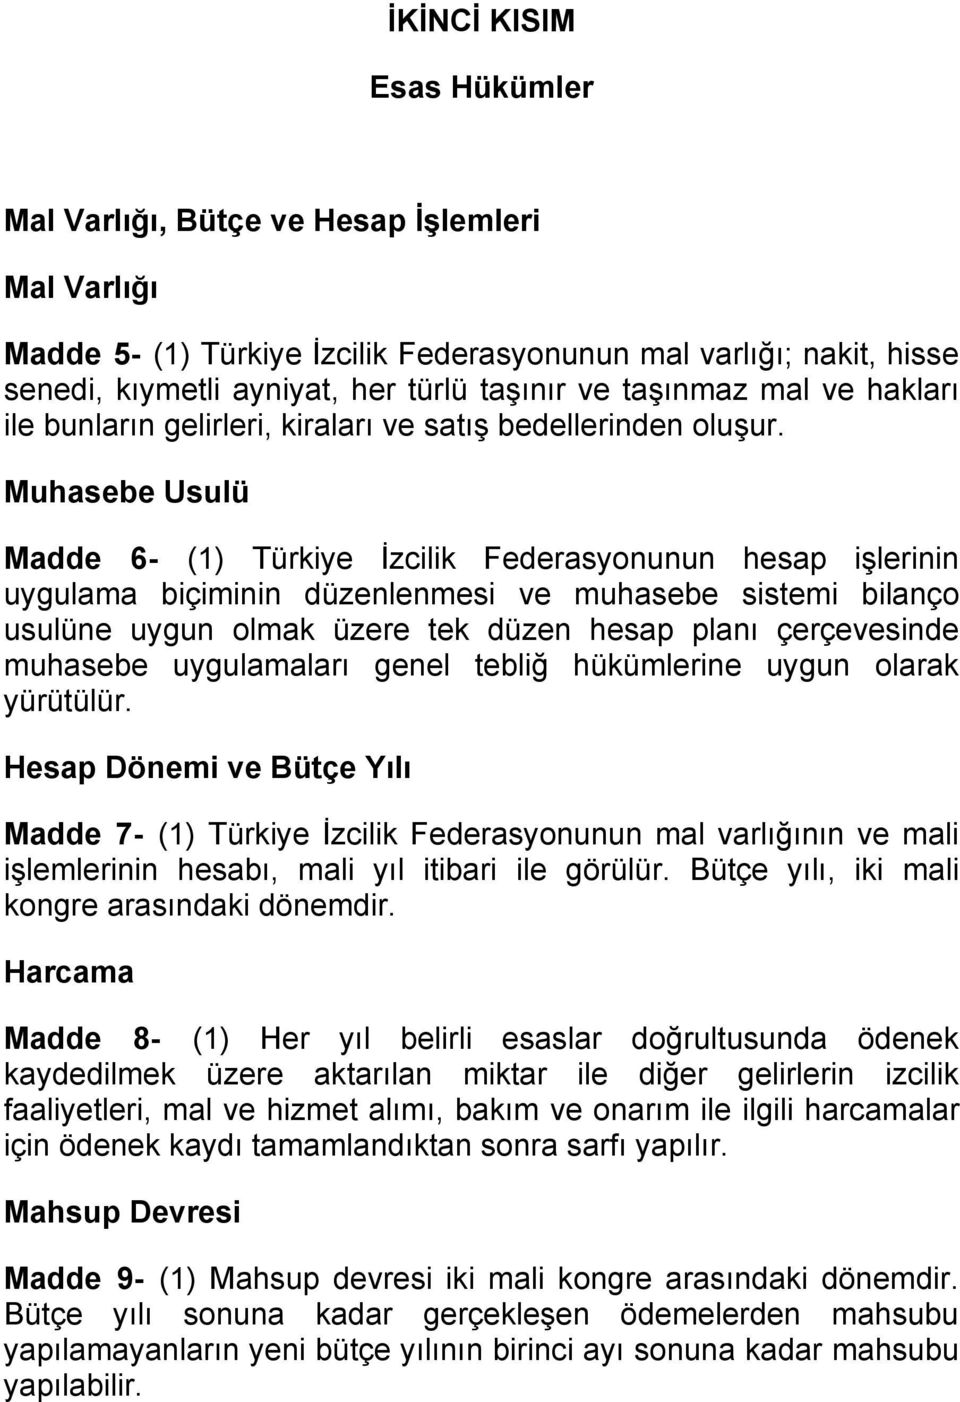 Muhasebe Usulü Madde 6- (1) Türkiye İzcilik Federasyonunun hesap işlerinin uygulama biçiminin düzenlenmesi ve muhasebe sistemi bilanço usulüne uygun olmak üzere tek düzen hesap planı çerçevesinde